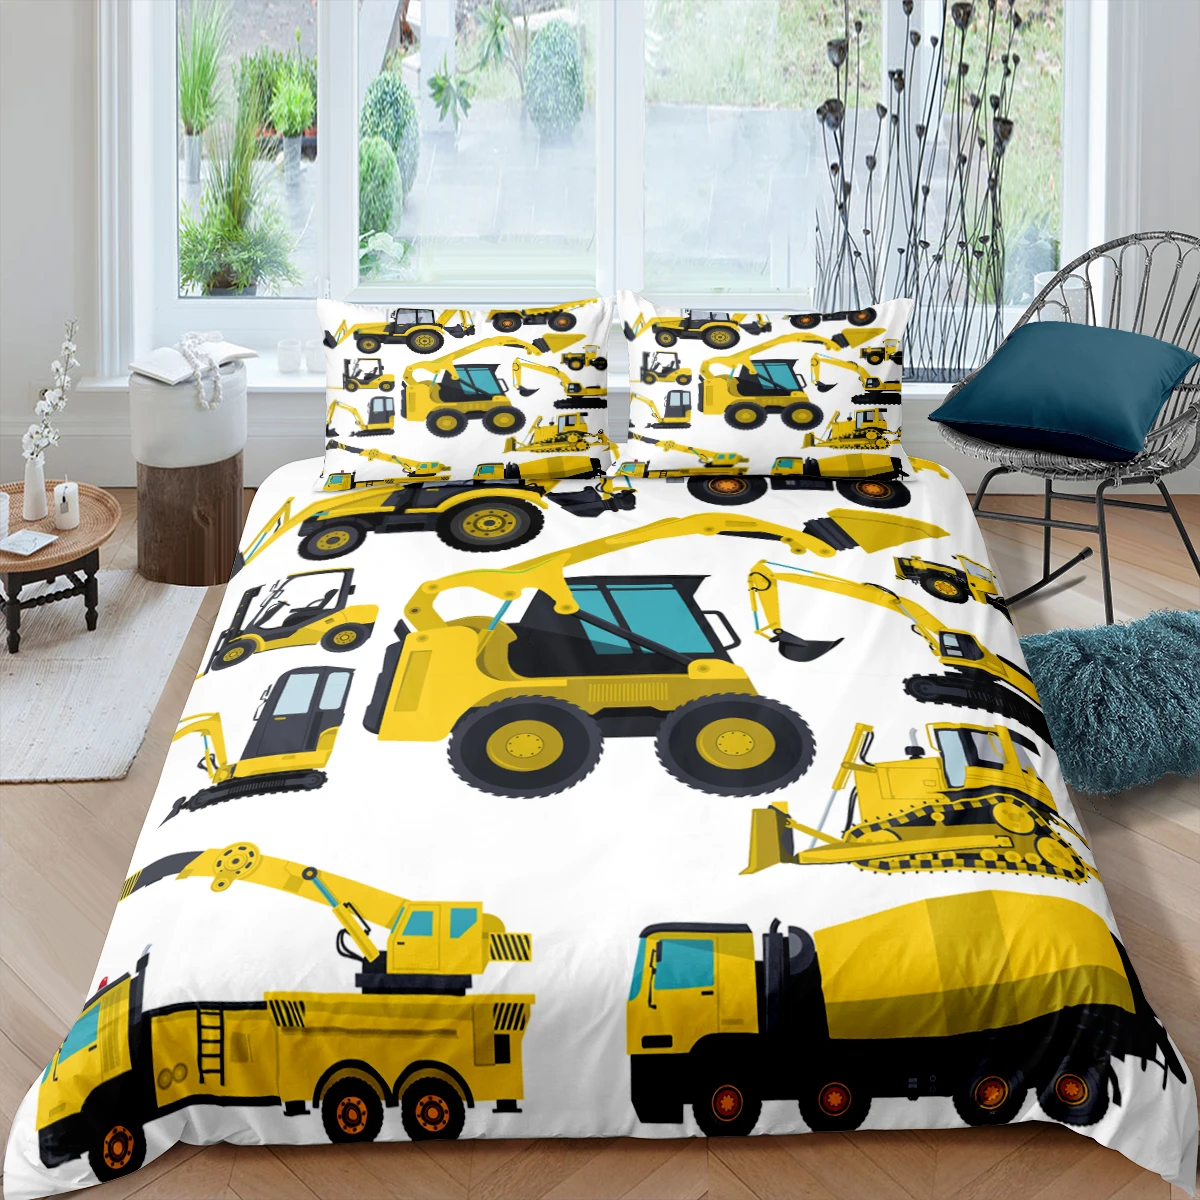 

Car Truck Fire Engine Cartoon Cool Boy3Pcs Queen King Full Size Duvet Cover Bedding Linen Set 2 Seater Bedspread 200x200 240x220